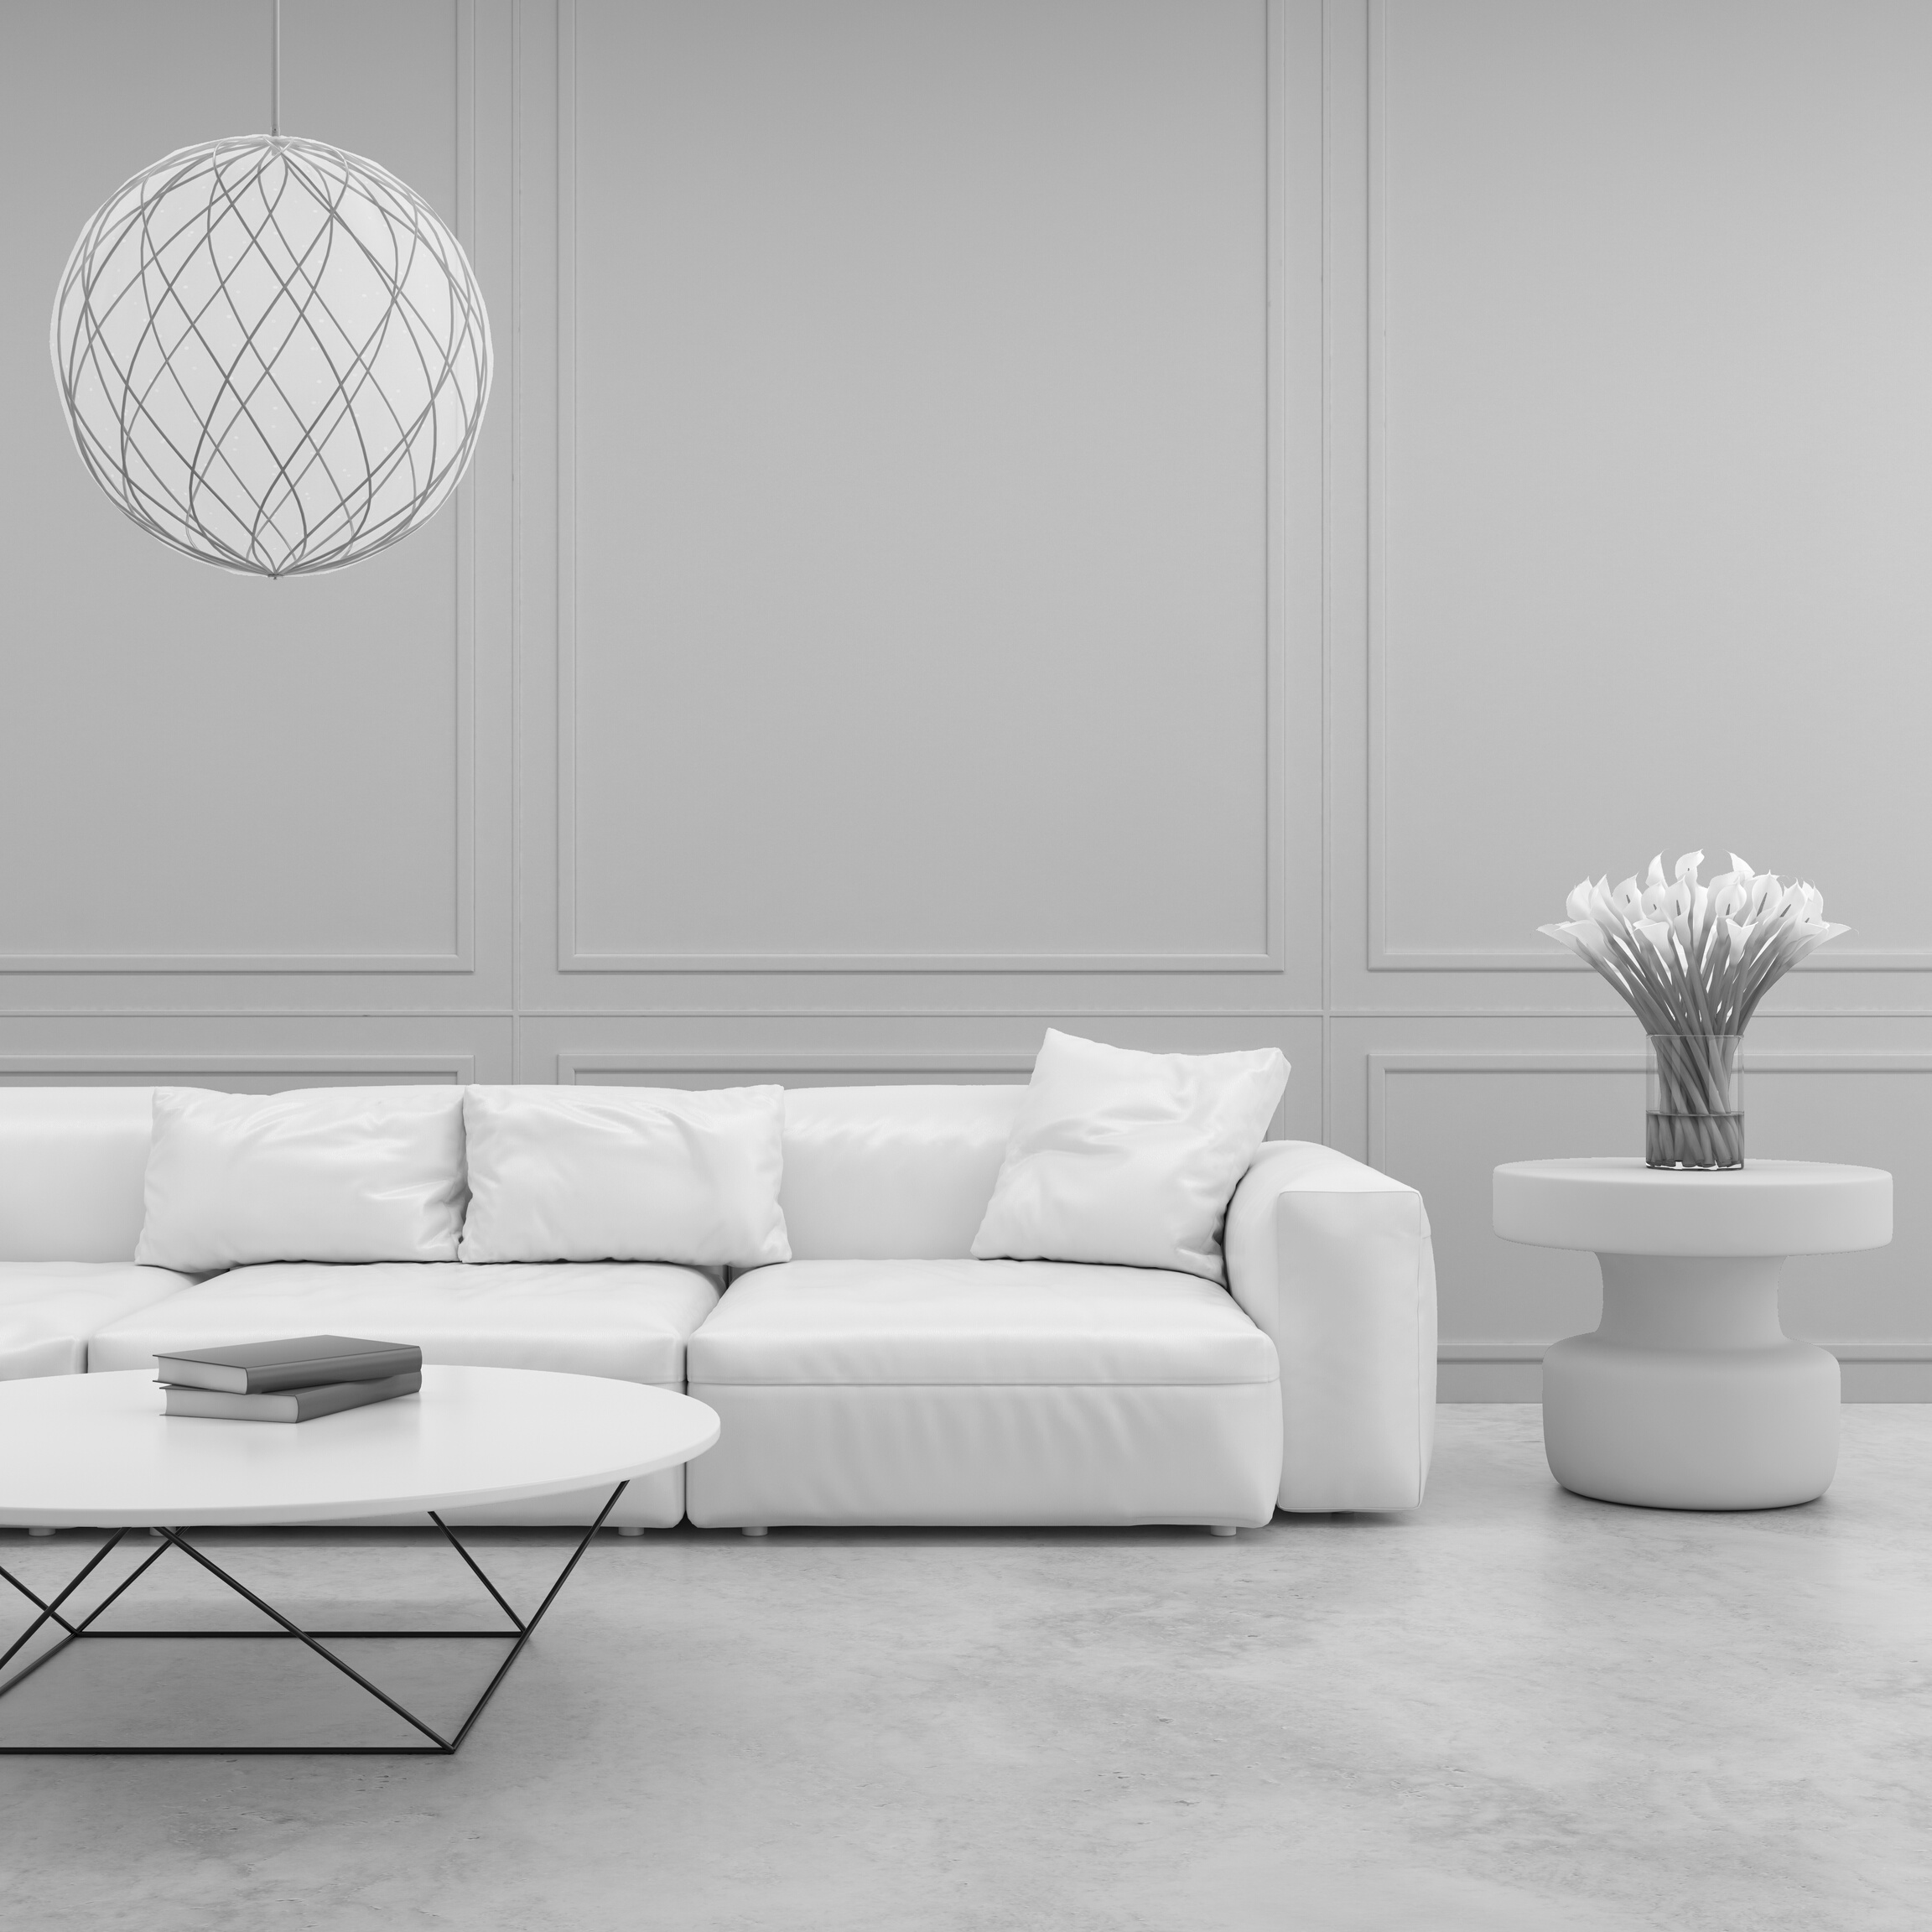 White elegant sofa in the living room